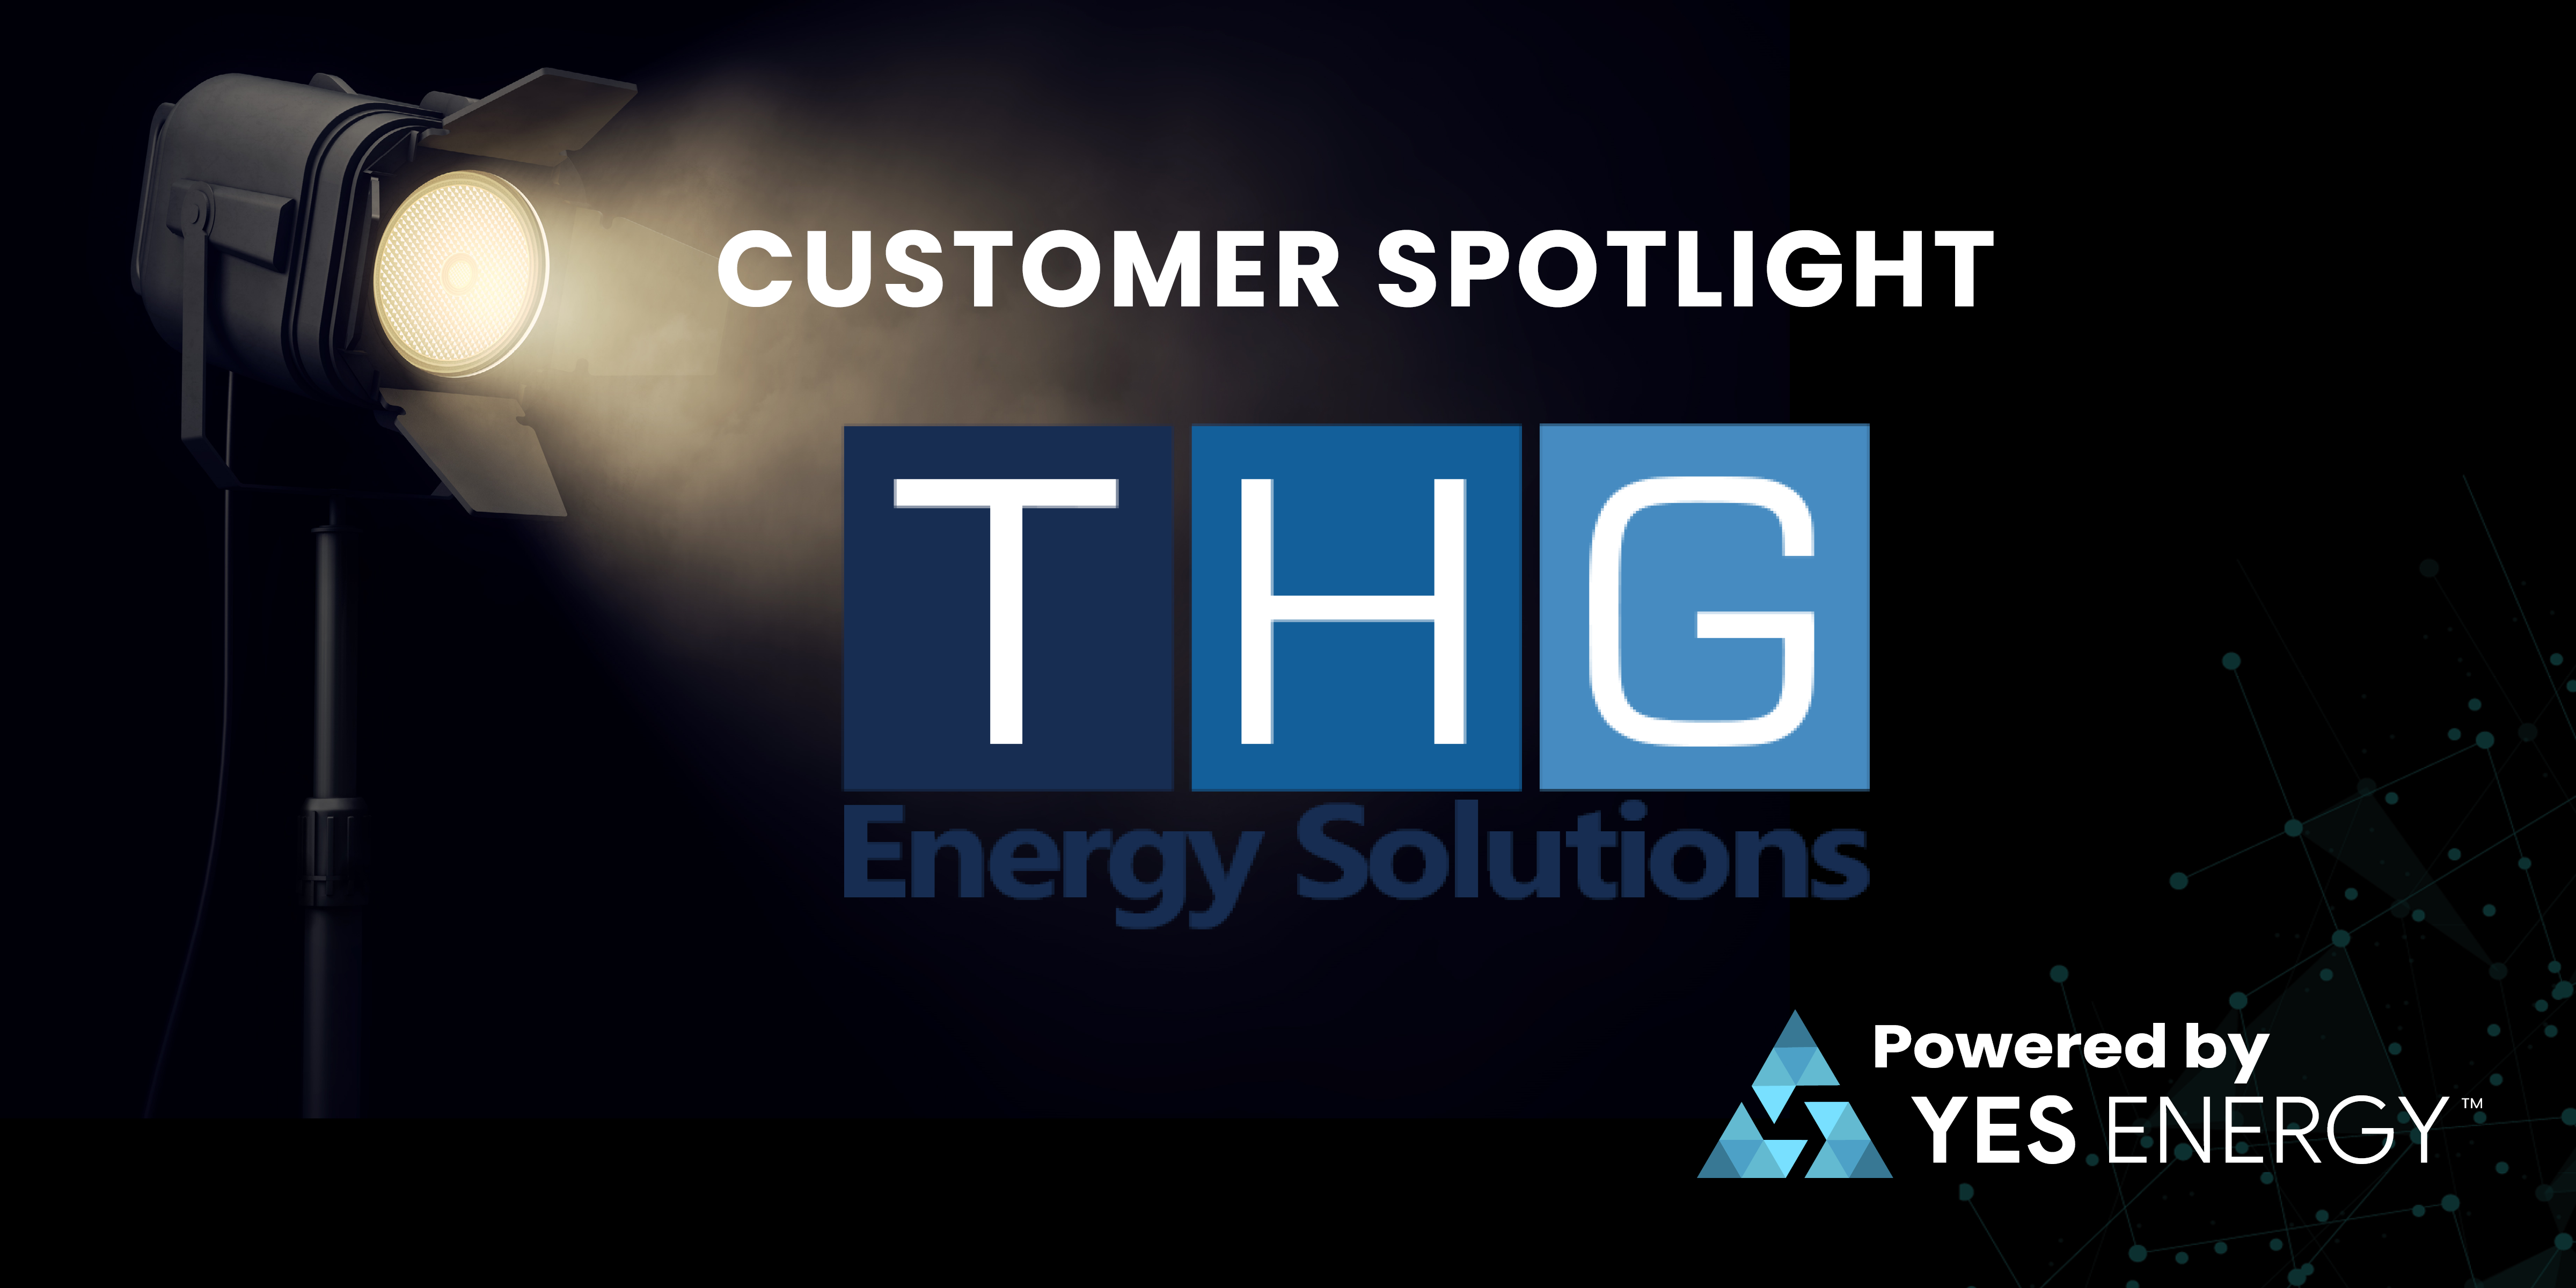 Customer spotlight THG Energy Solutions